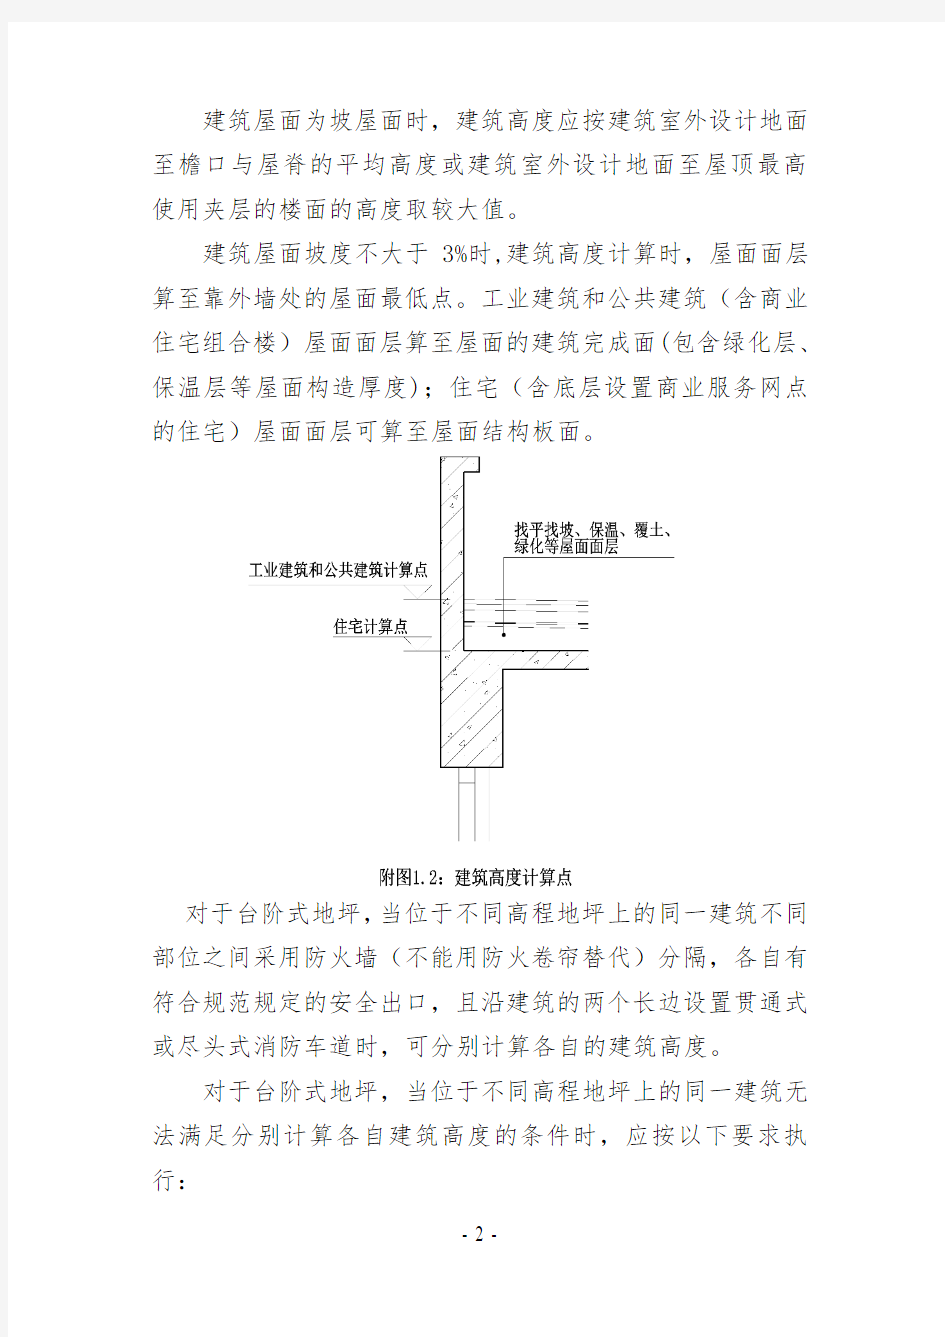 2015浙江省消防技术规范难点问题操作技术指南(报批稿)